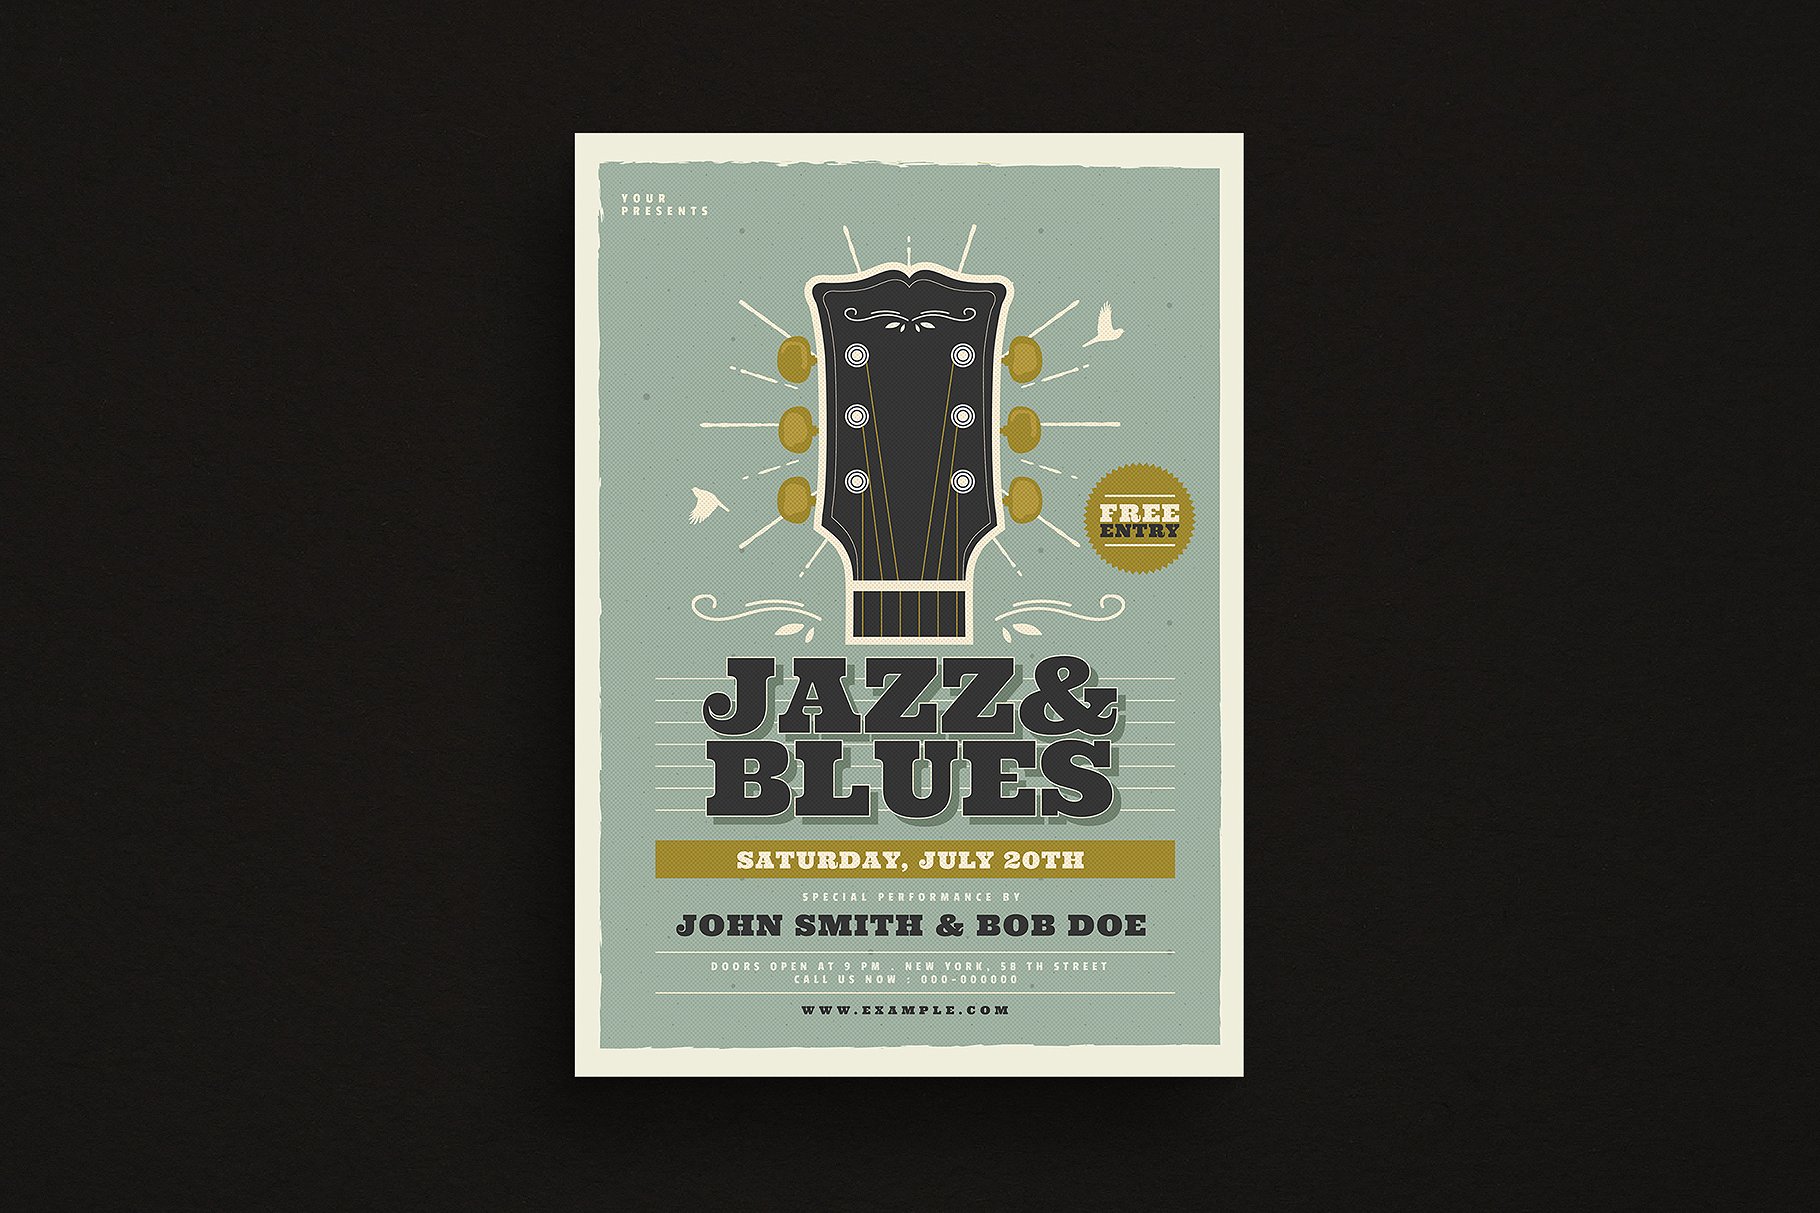 爵士蓝调音乐活动宣传单设计模板 Jazz & Blues Music Flyer插图(1)